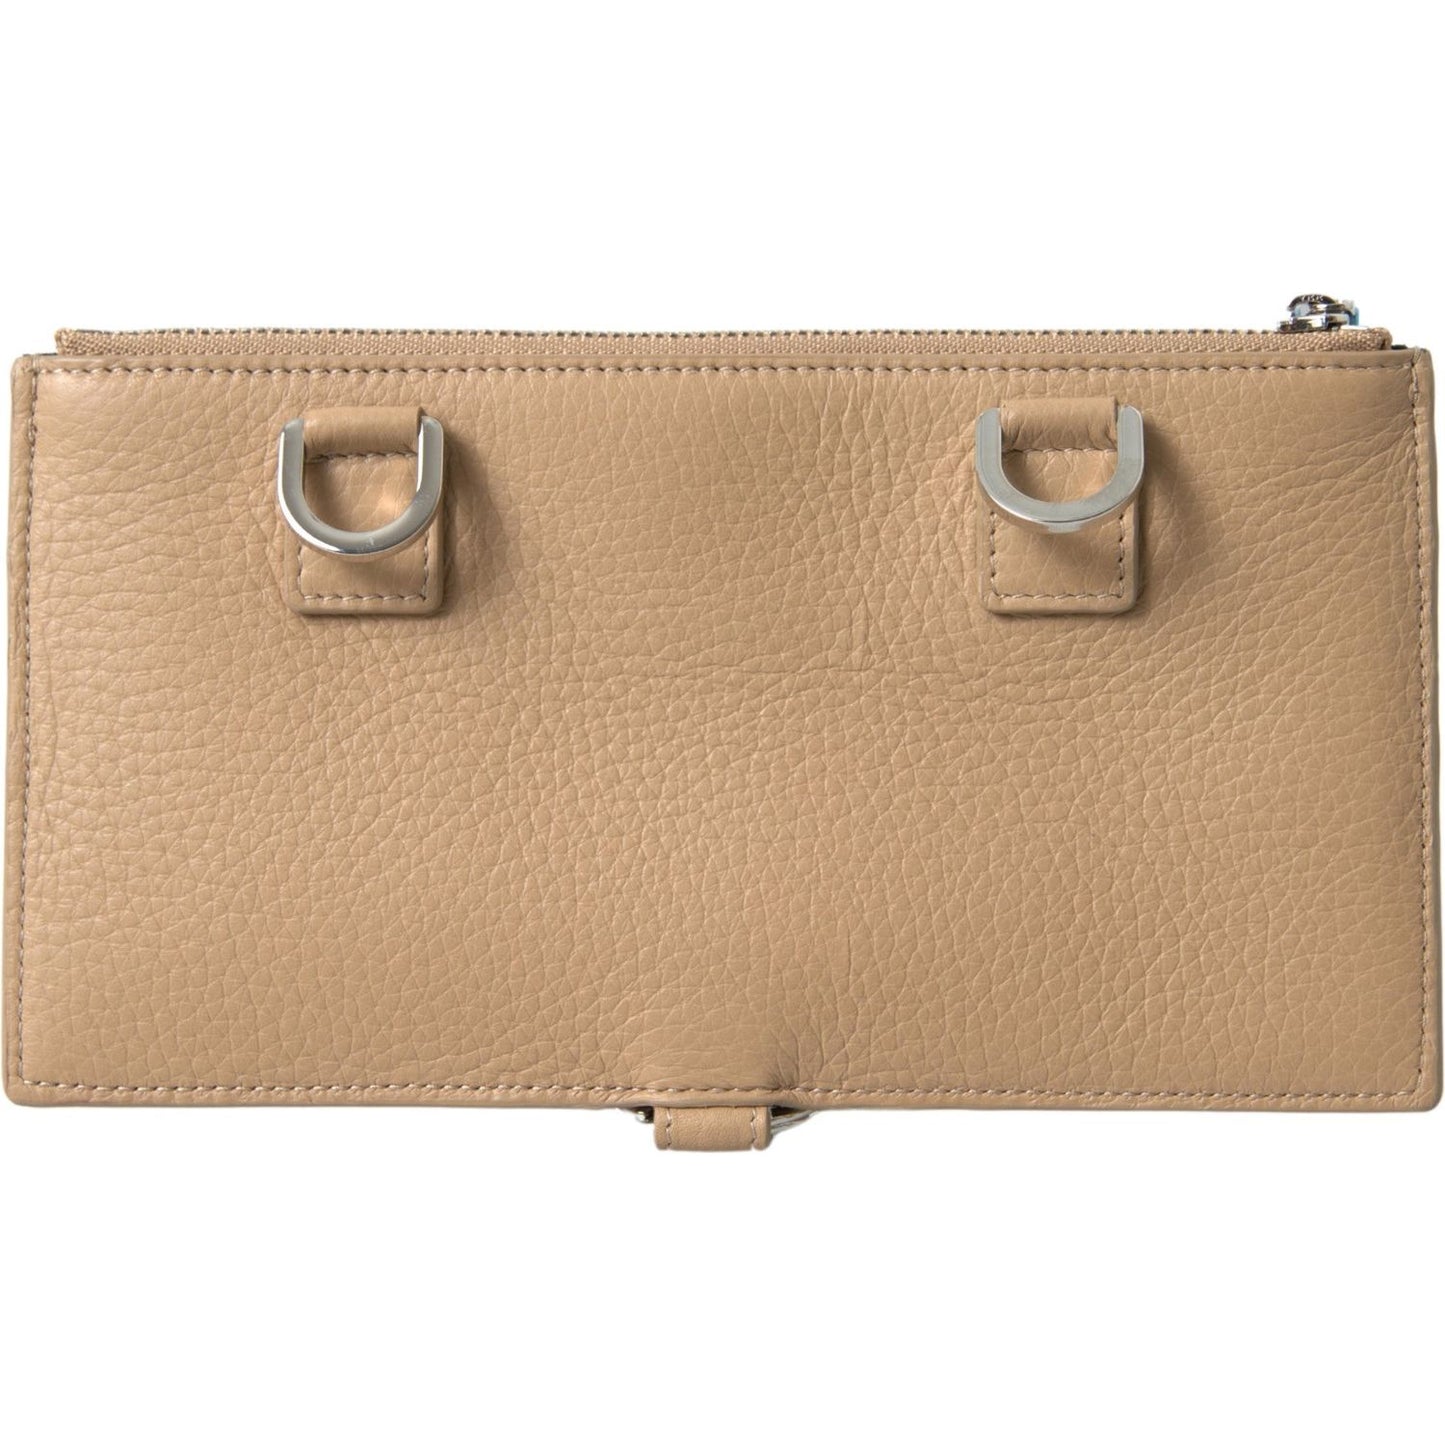 Dolce & Gabbana Elegant Beige Leather Wallet with Detachable Strap beige-leather-shoulder-cardholder-shoulder-strap-wallet 465A4539-Large-72214b62-4ff.jpg